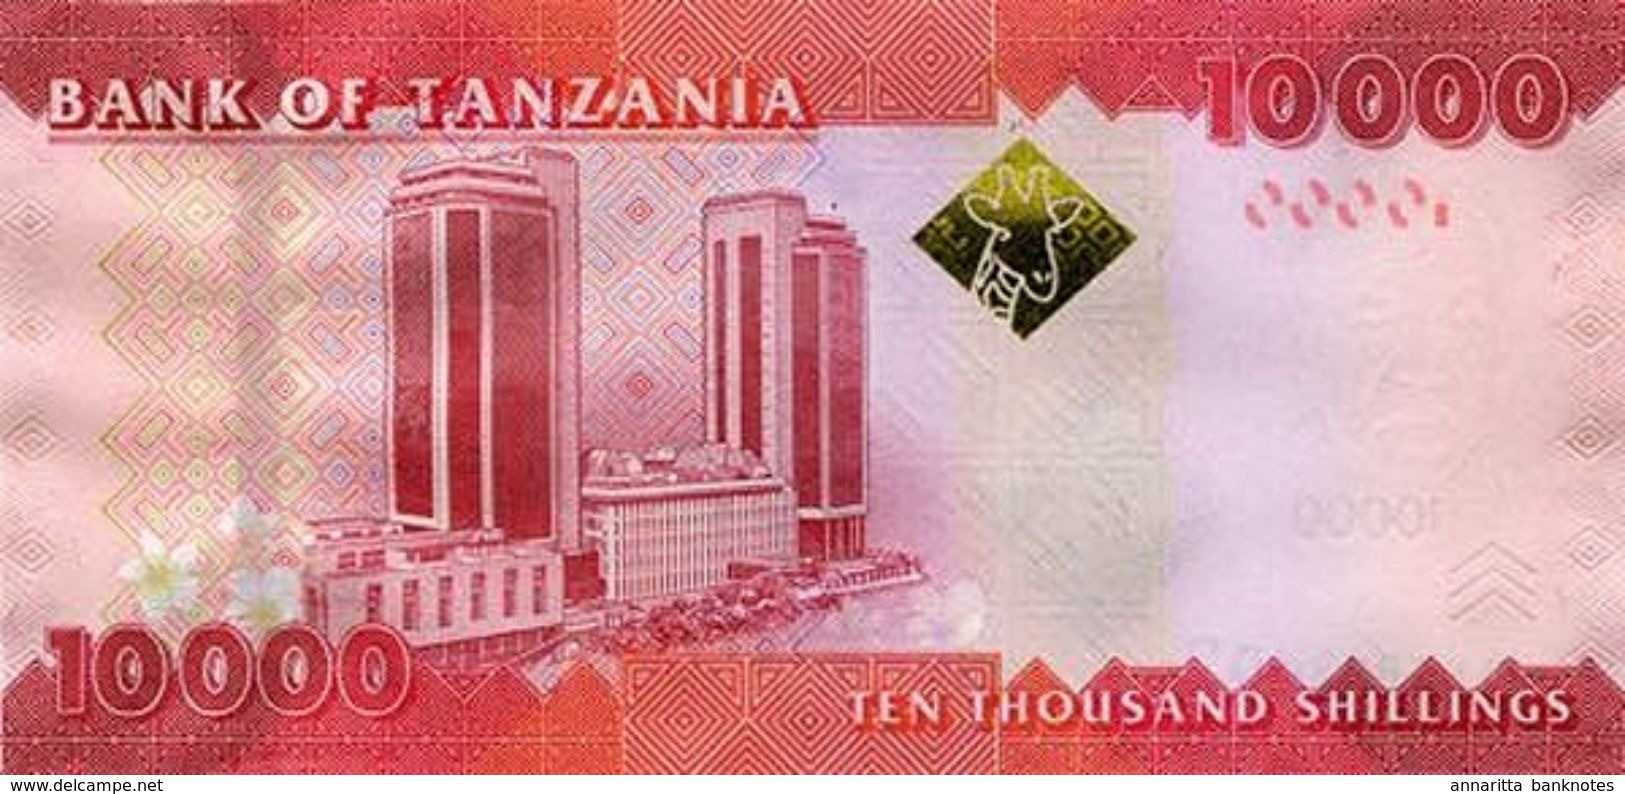 Tanzania (BOT) 10000 Shillings ND (2015) UNC Cat No. P-44b / TZ143b - Tanzanie